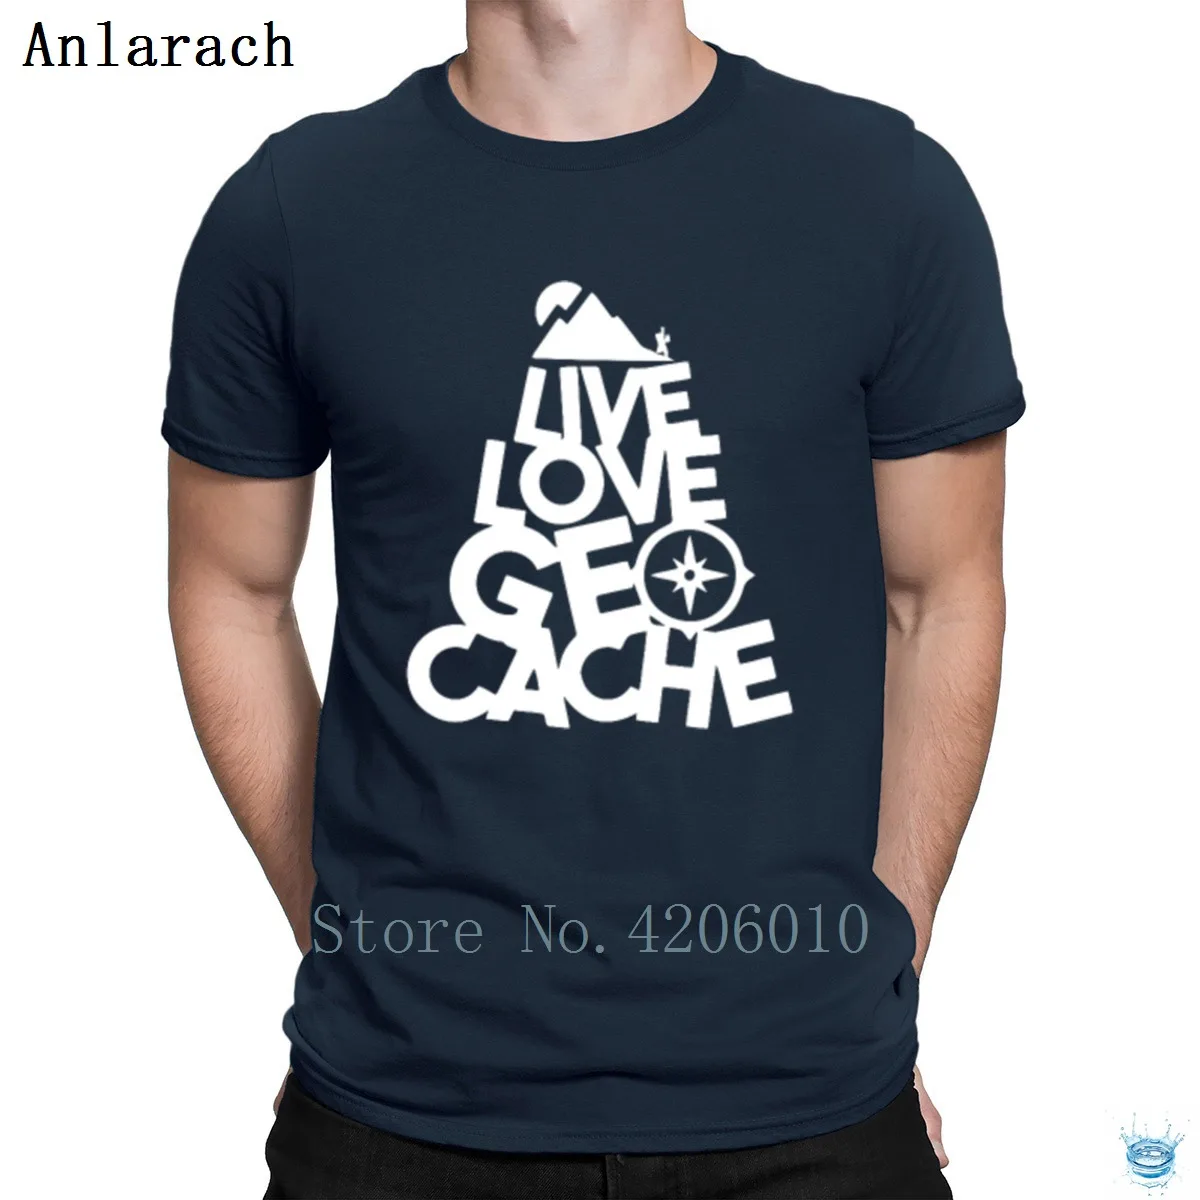 Live Love Geocache футболка дизайн стильный большой мужская футболка хип-хоп топы тренд Лето анларач